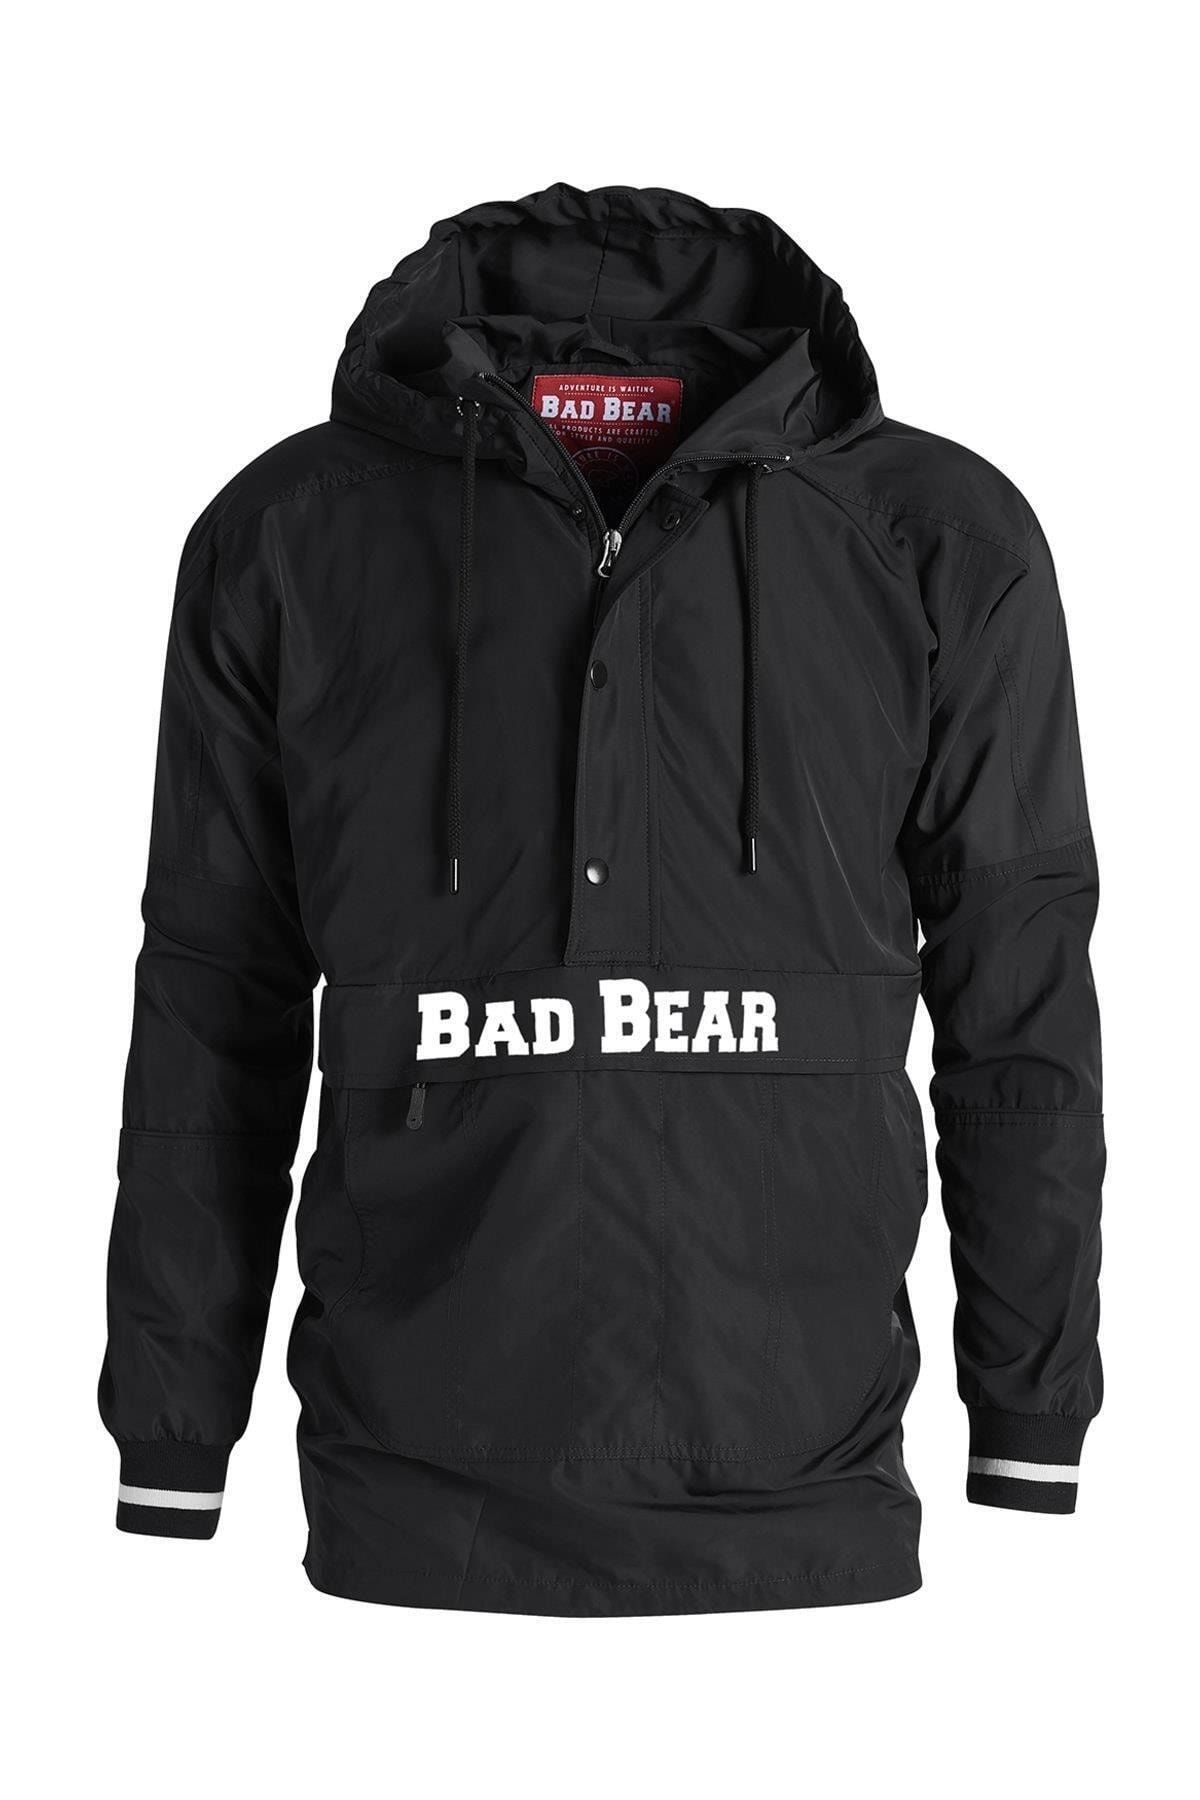 Bad Bear 19.02.13.009-C01 Hurricane Erkek Rüzgarlık